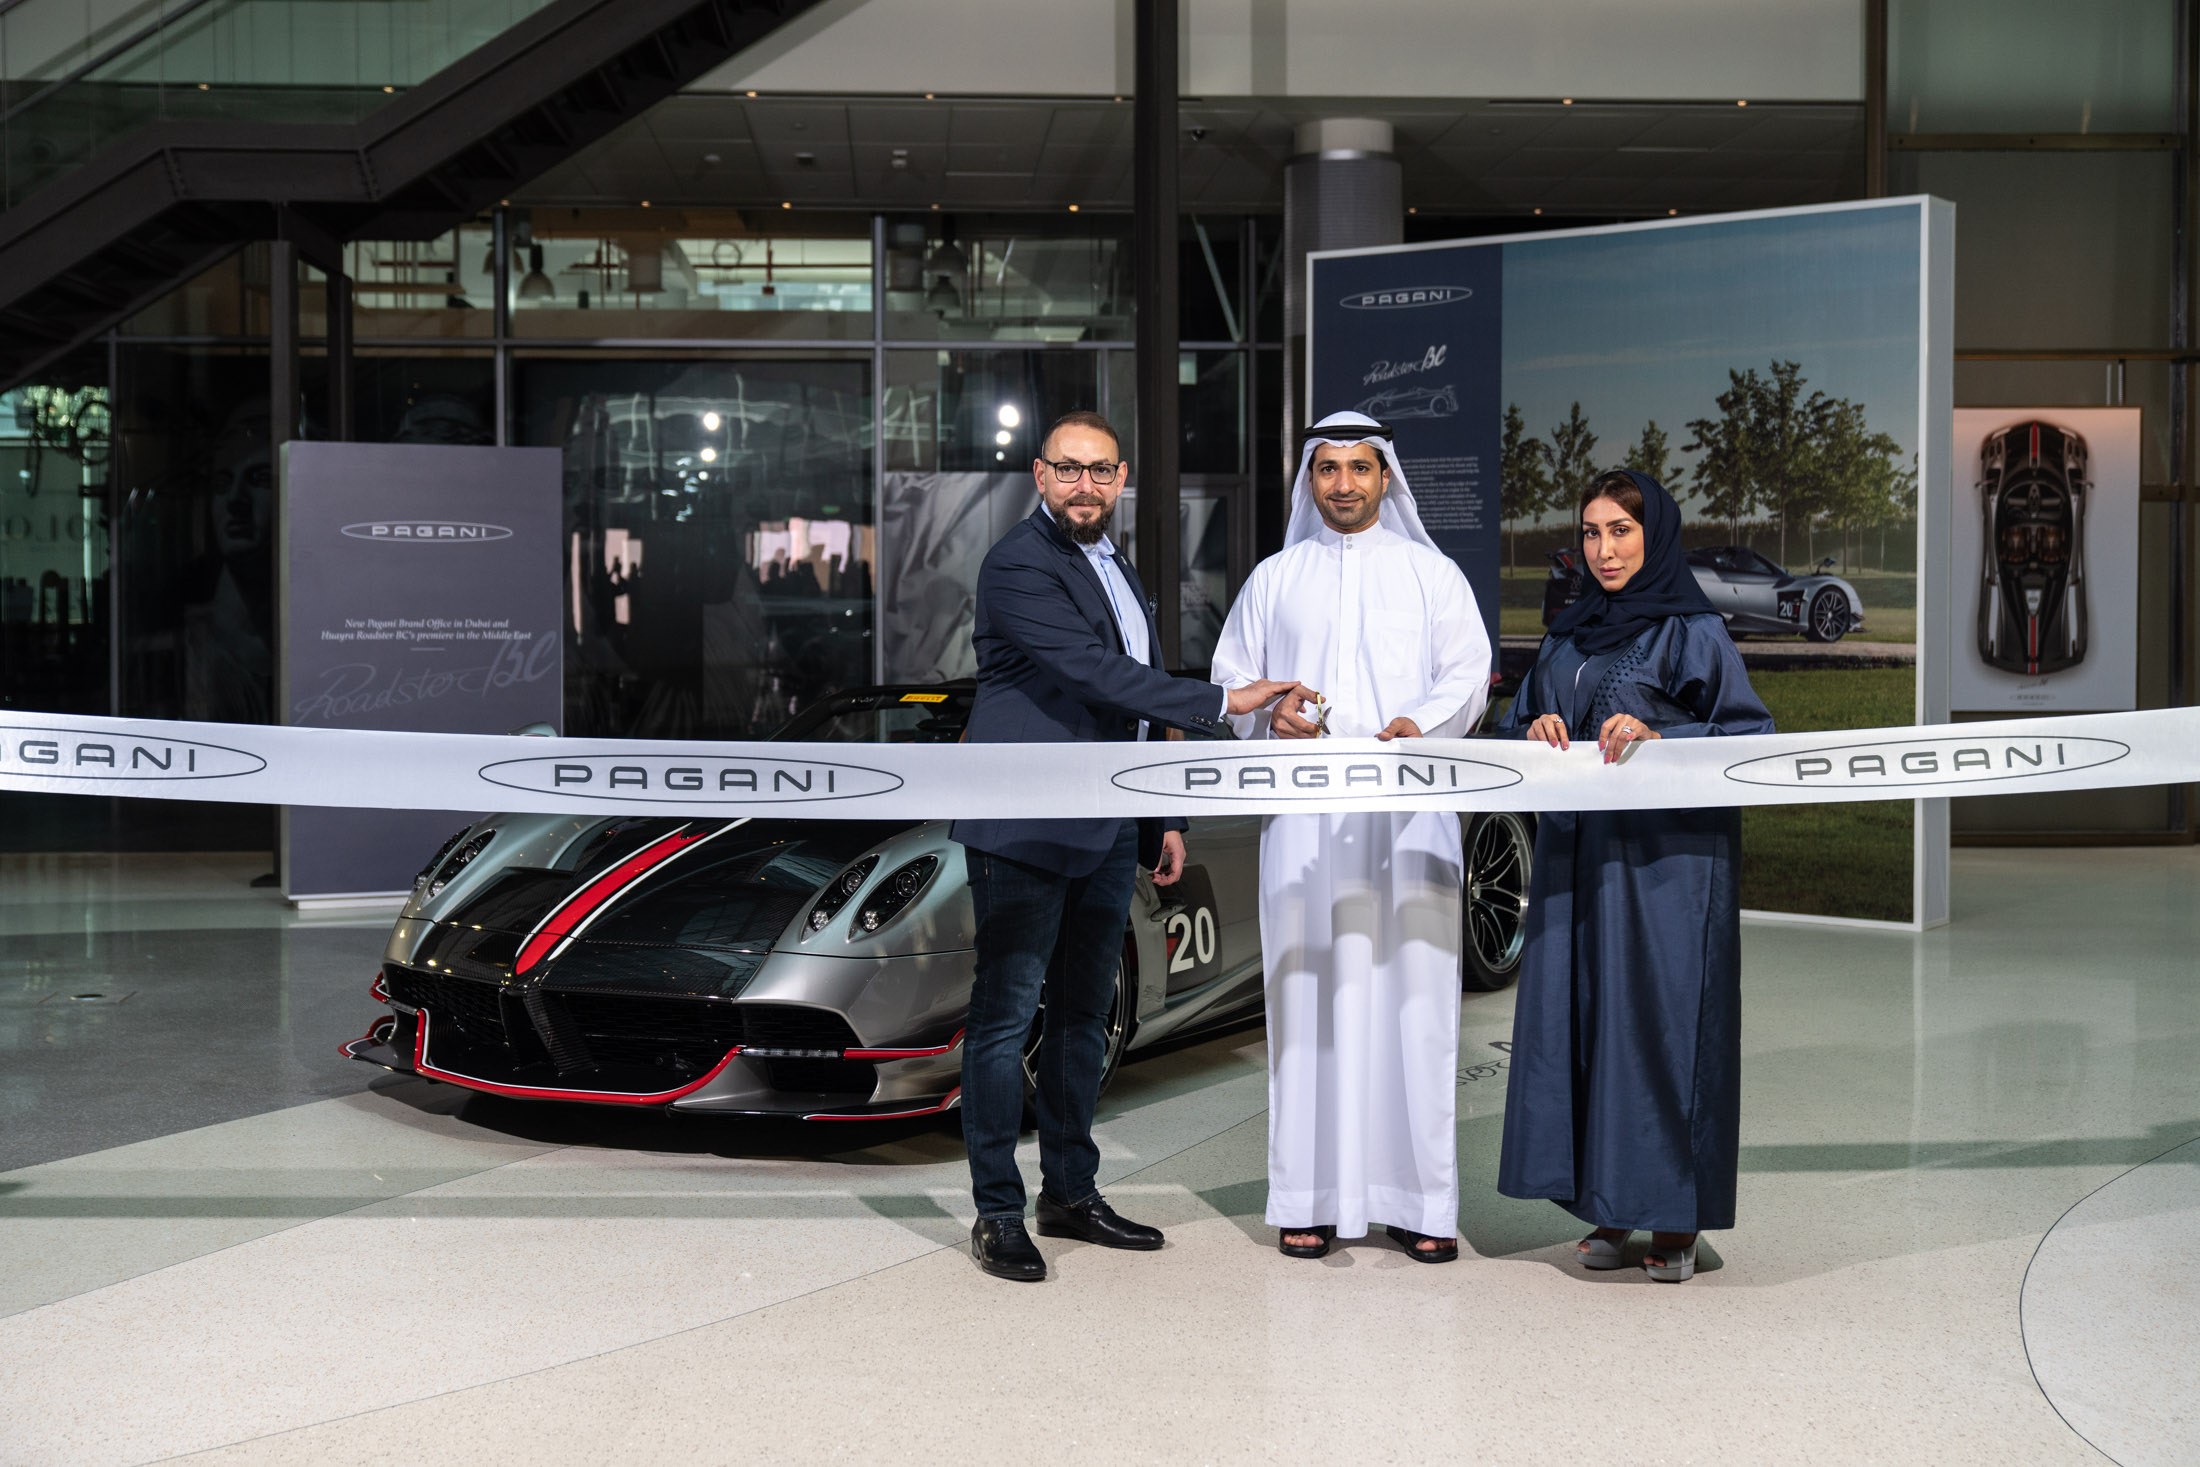 افتتاح مكتب باغاني في دبي والكشف عن أول هويرا رودستر BC في المنطقة 6